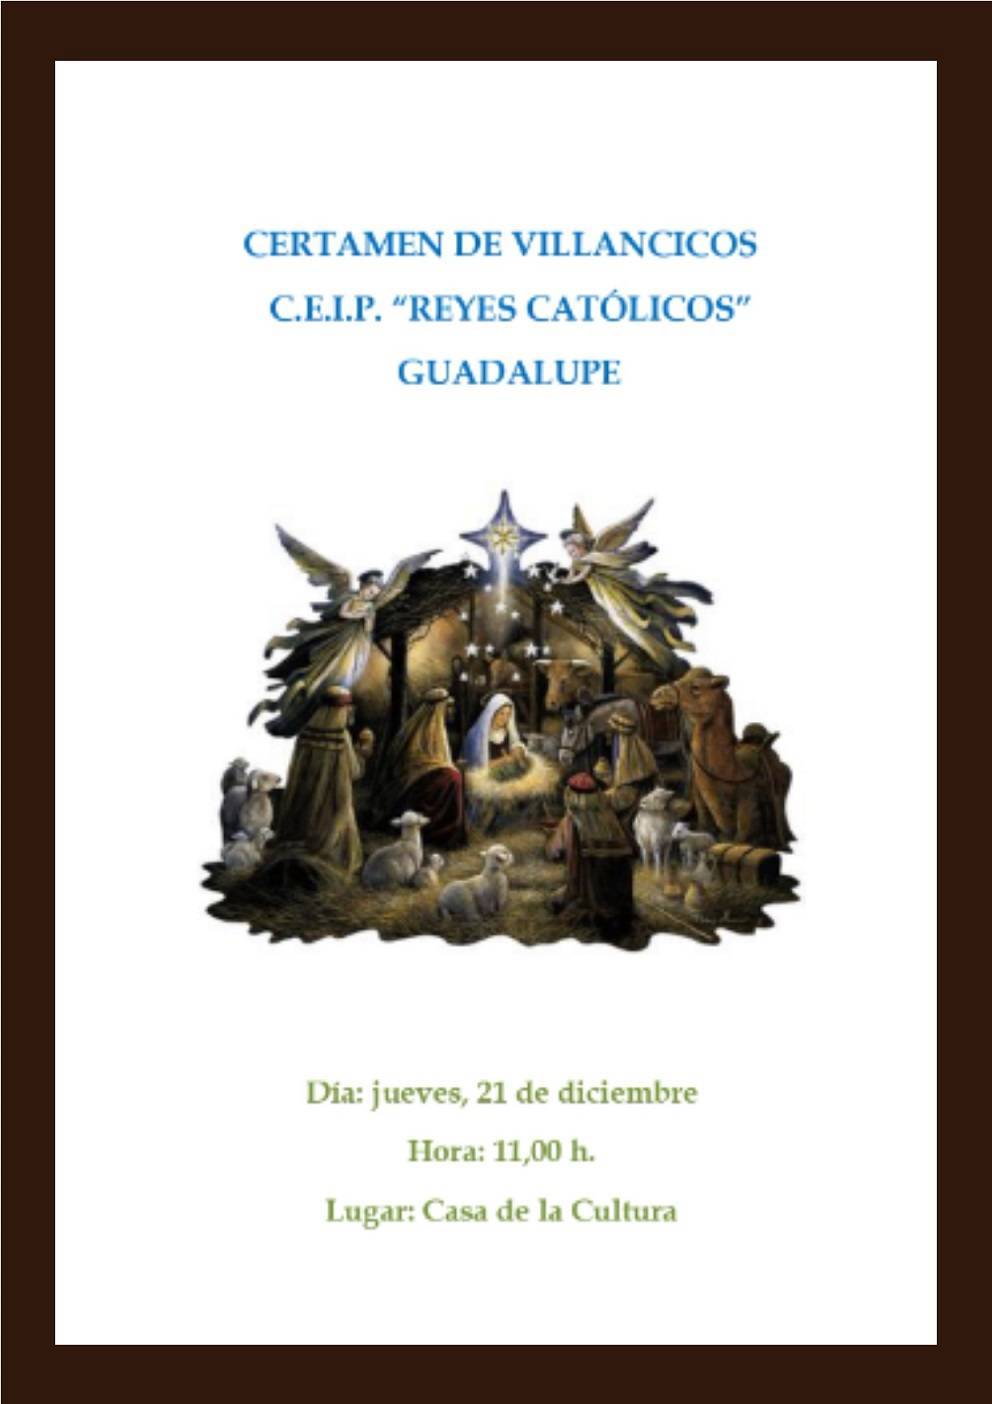 Certamen de villancicos del CEIP Reyes Católicos (2023) - Guadalupe (Cáceres)